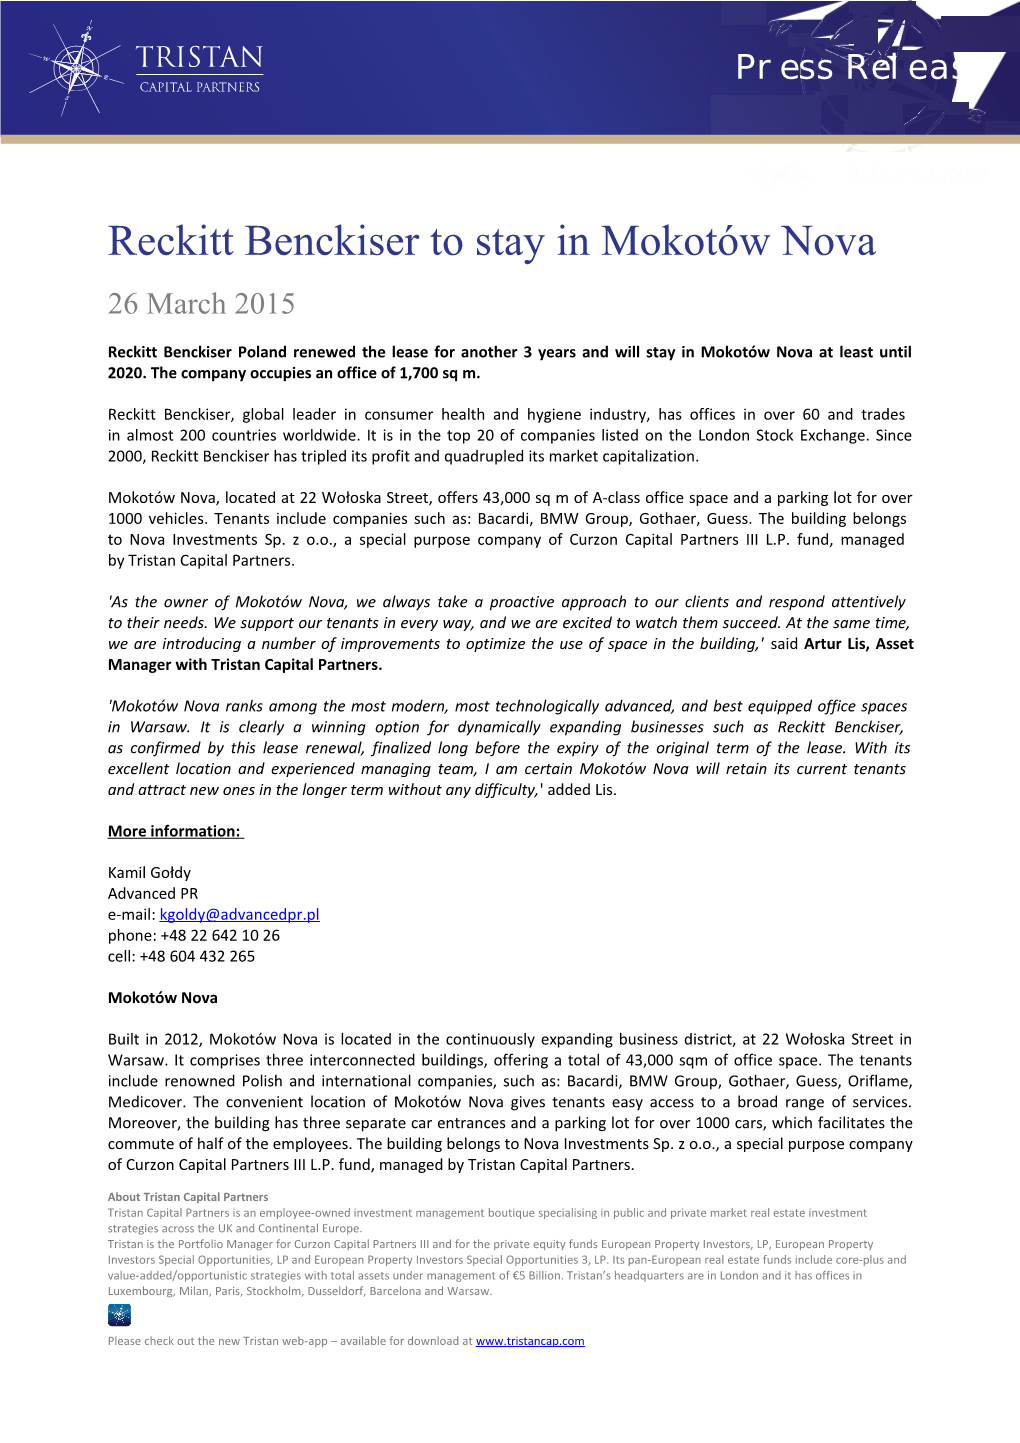 Reckitt Benckiser to Stay in Mokotów Nova